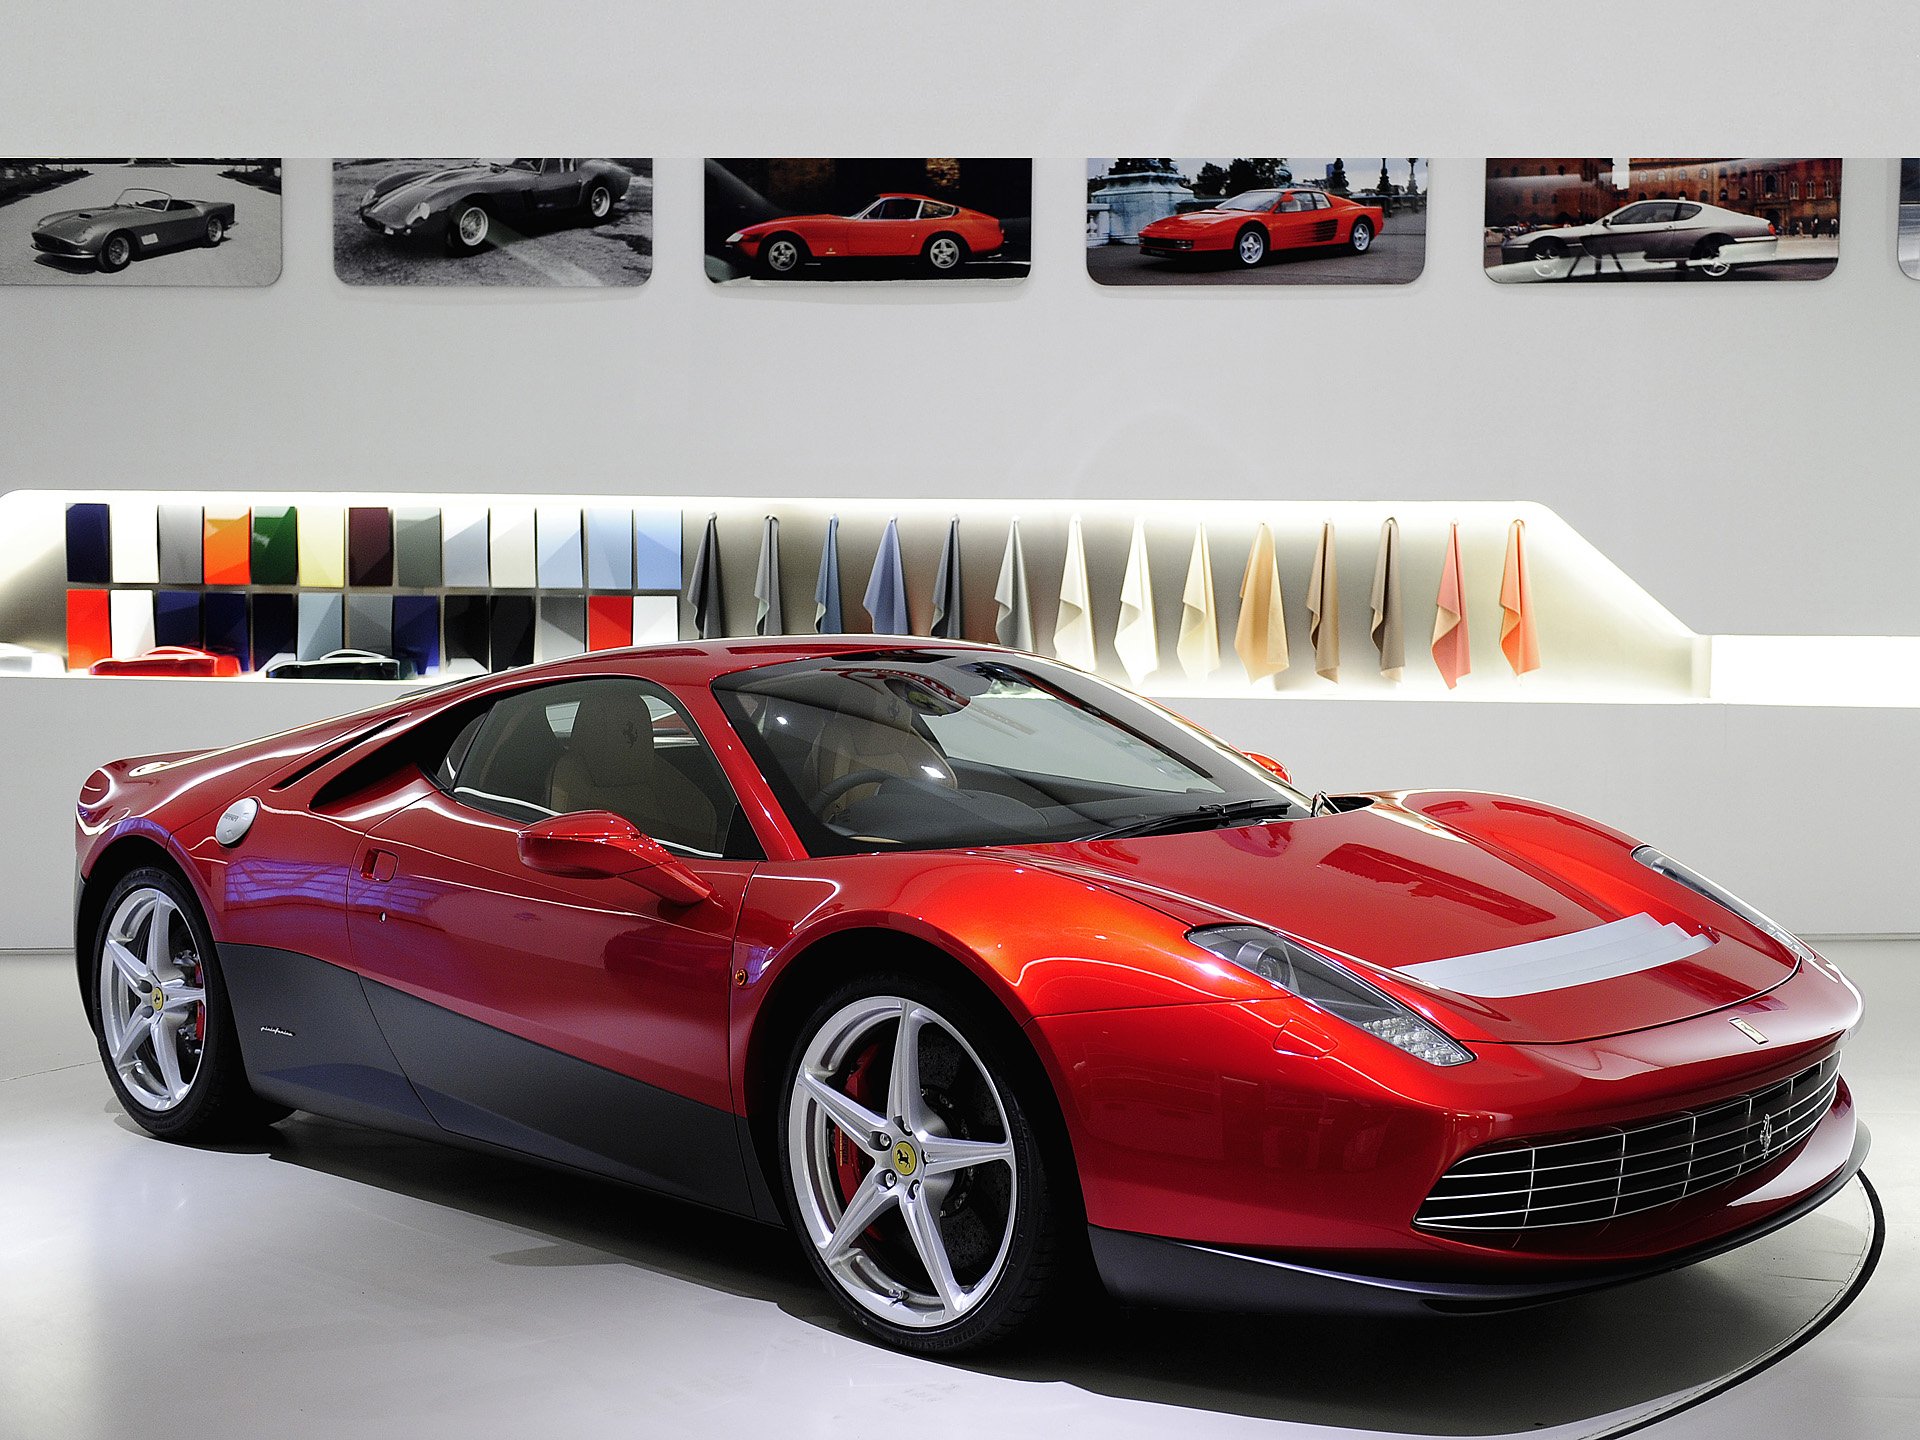 Ferrari Sp12 Ec Wallpapers